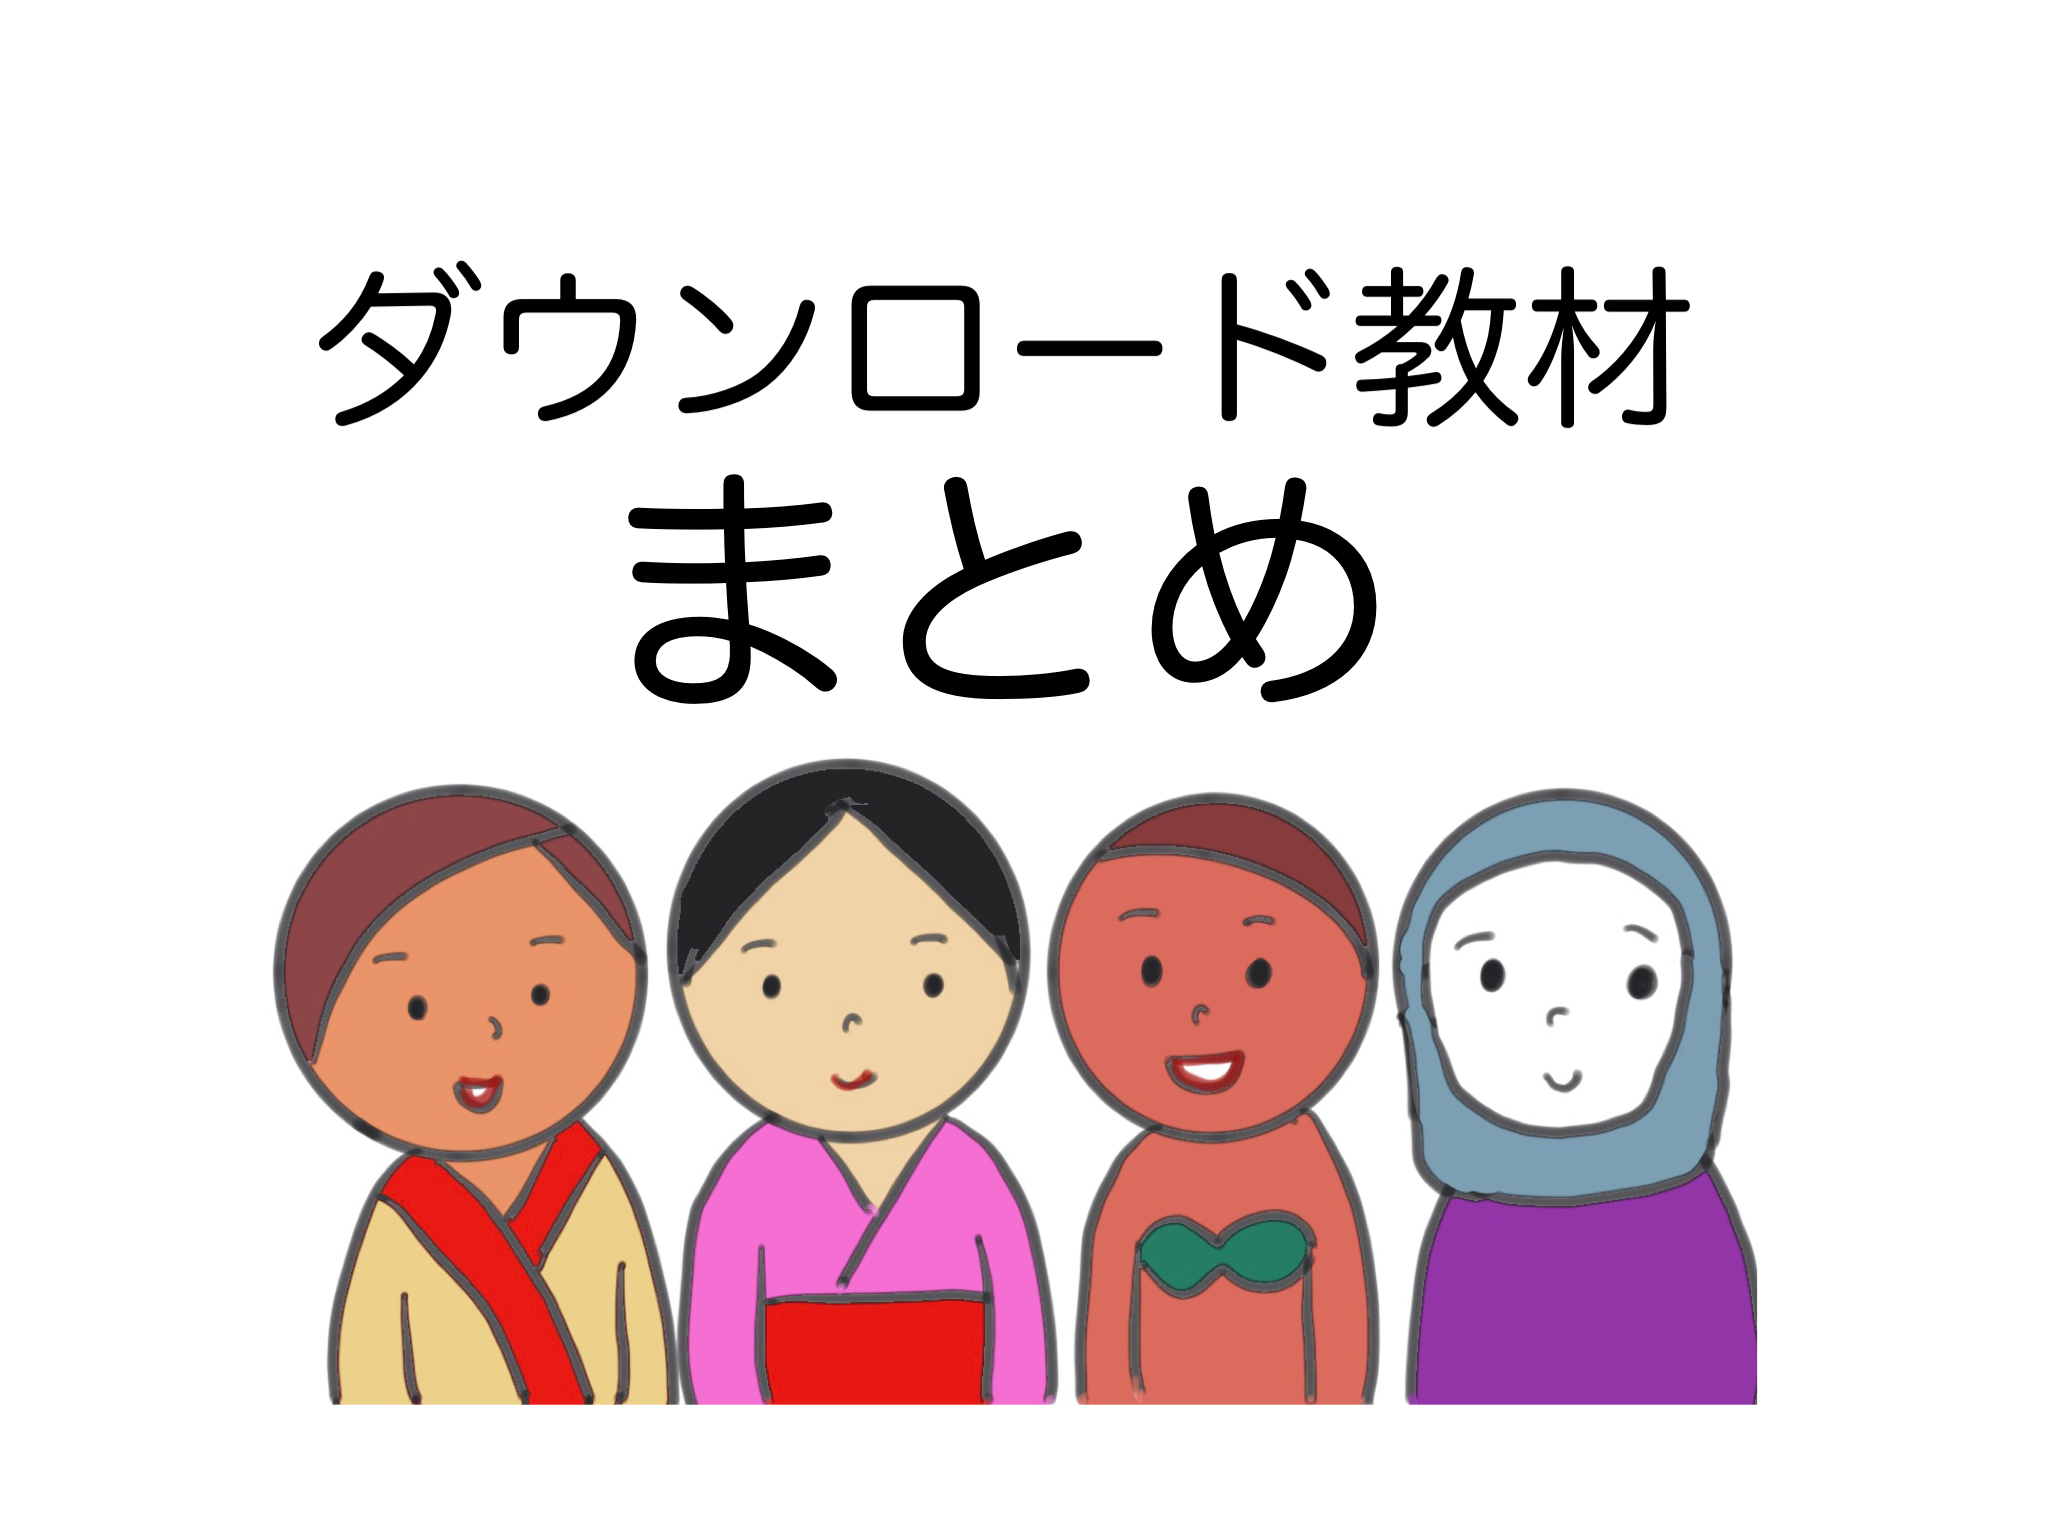 できる日本語 無料ダウンロード教材をまとめてみました ぱんずせんせいblog